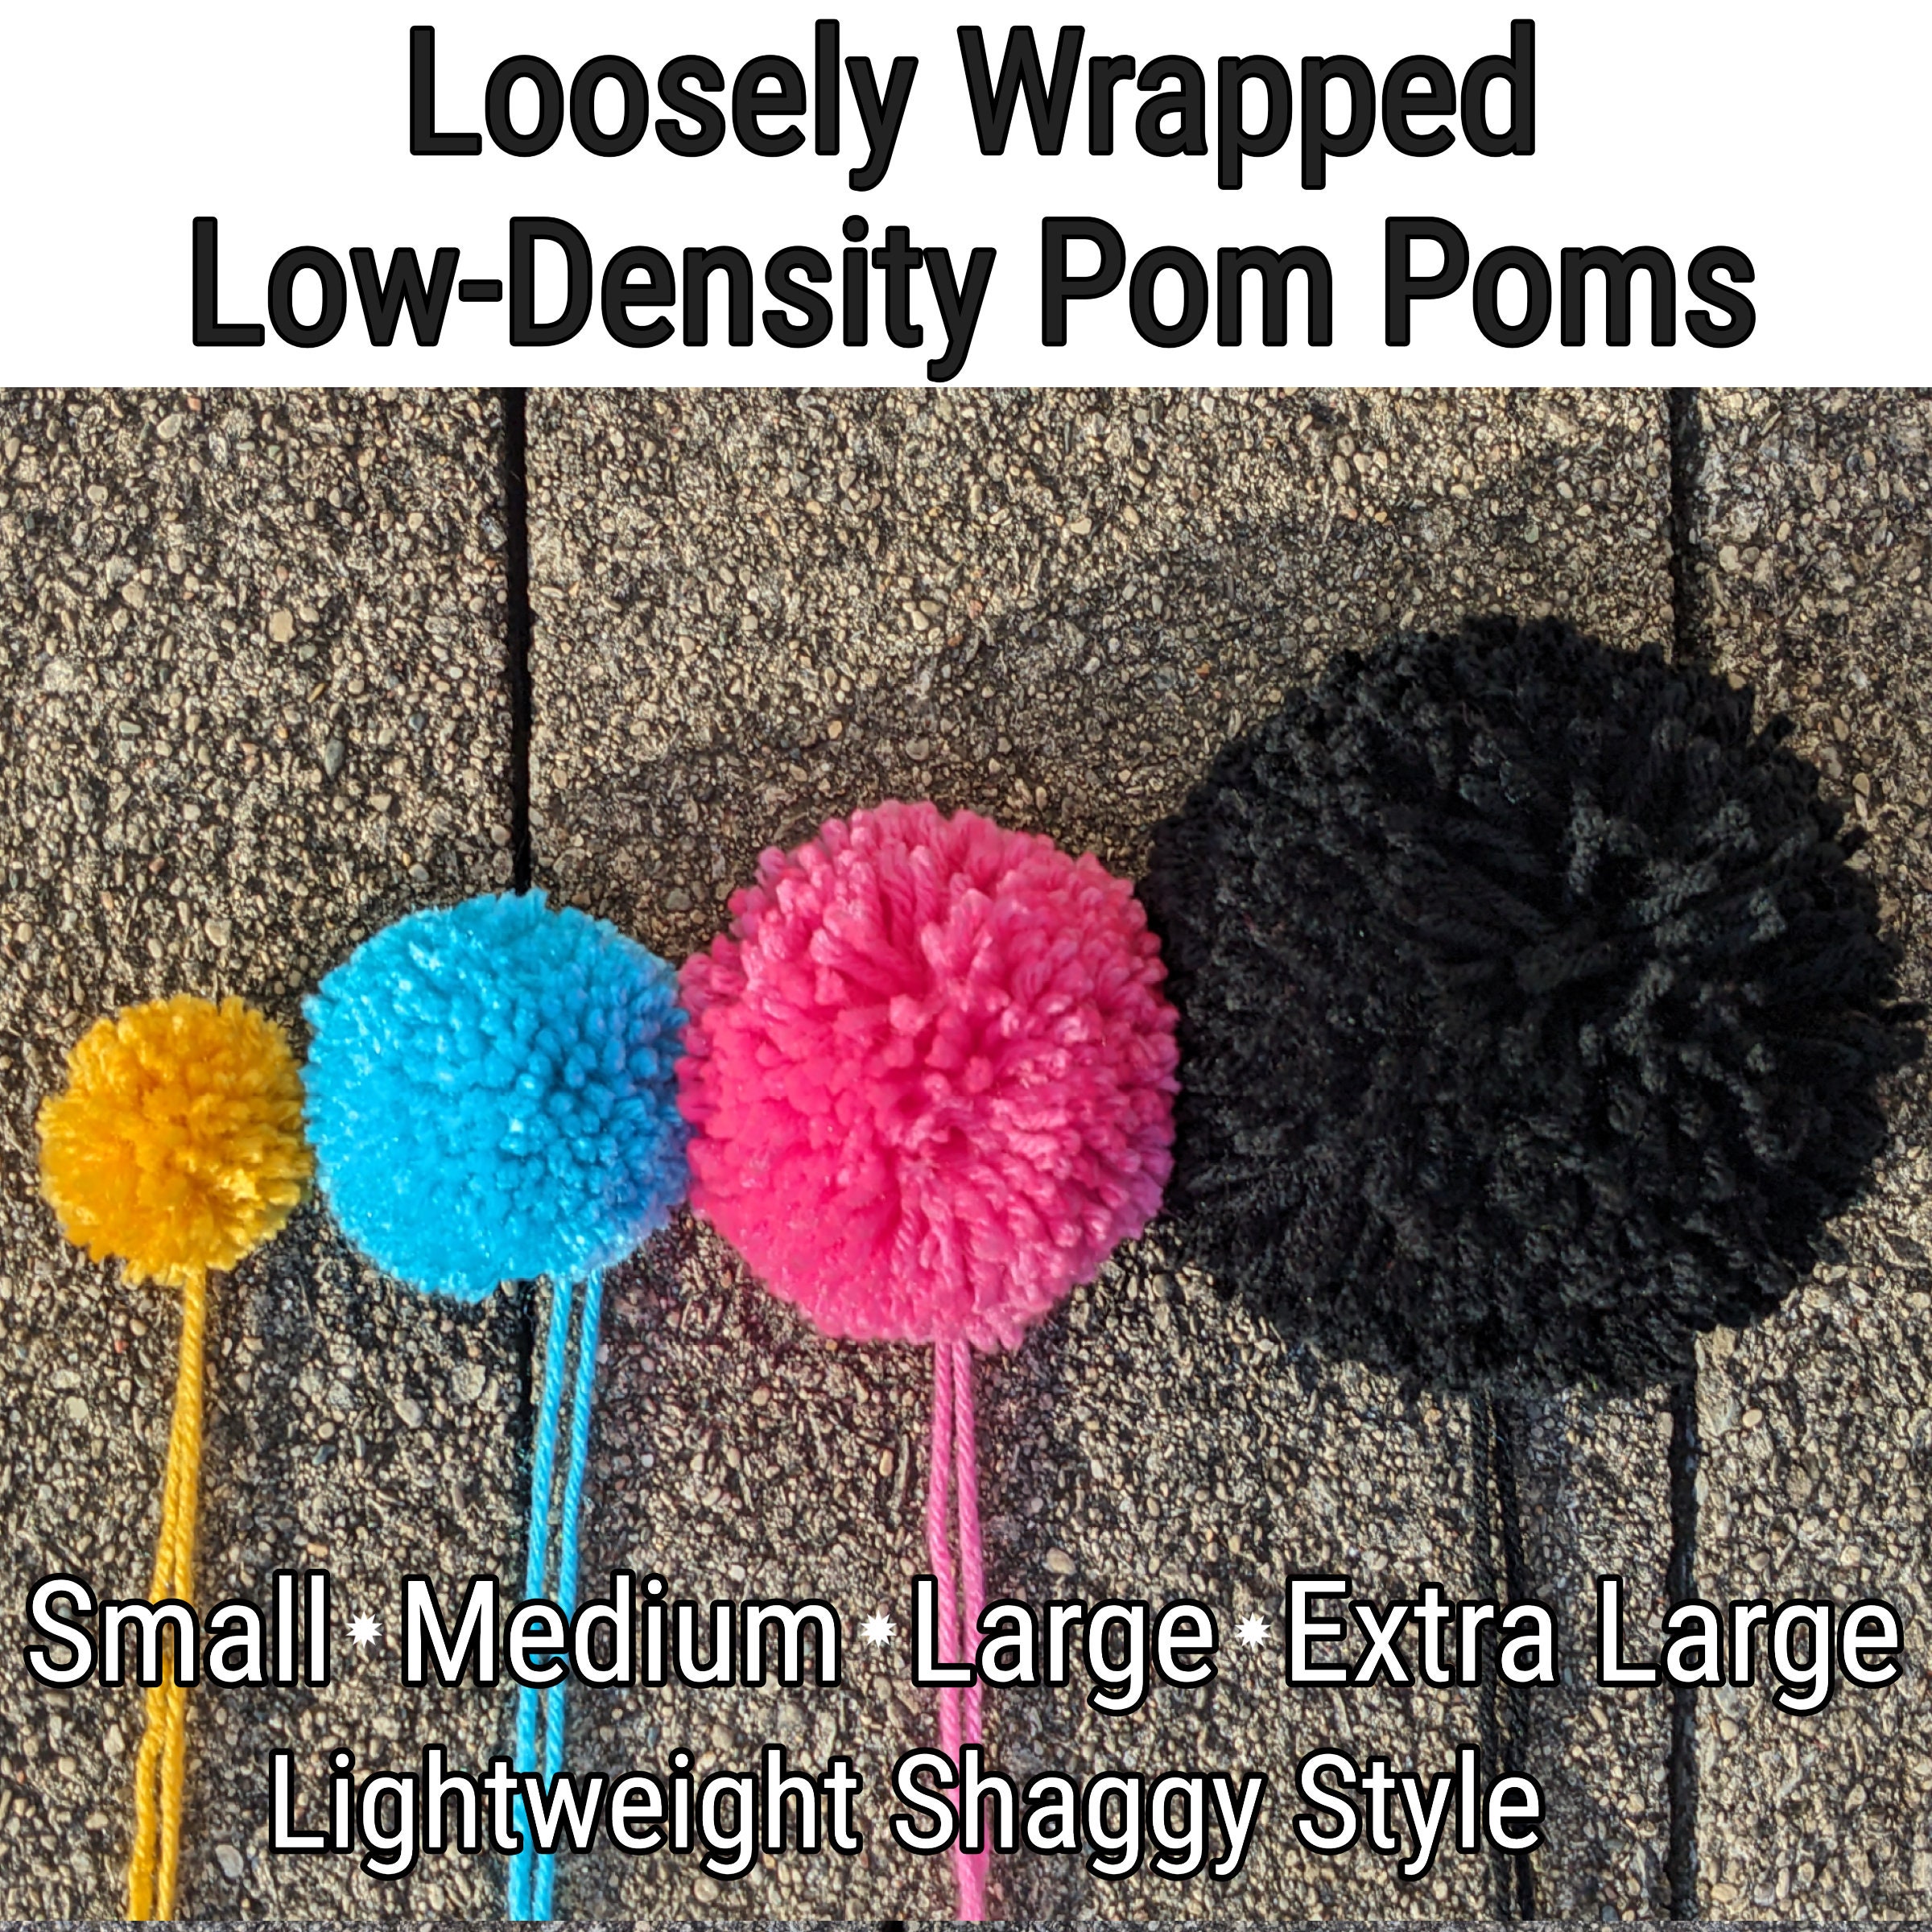 How to make extra large pom poms